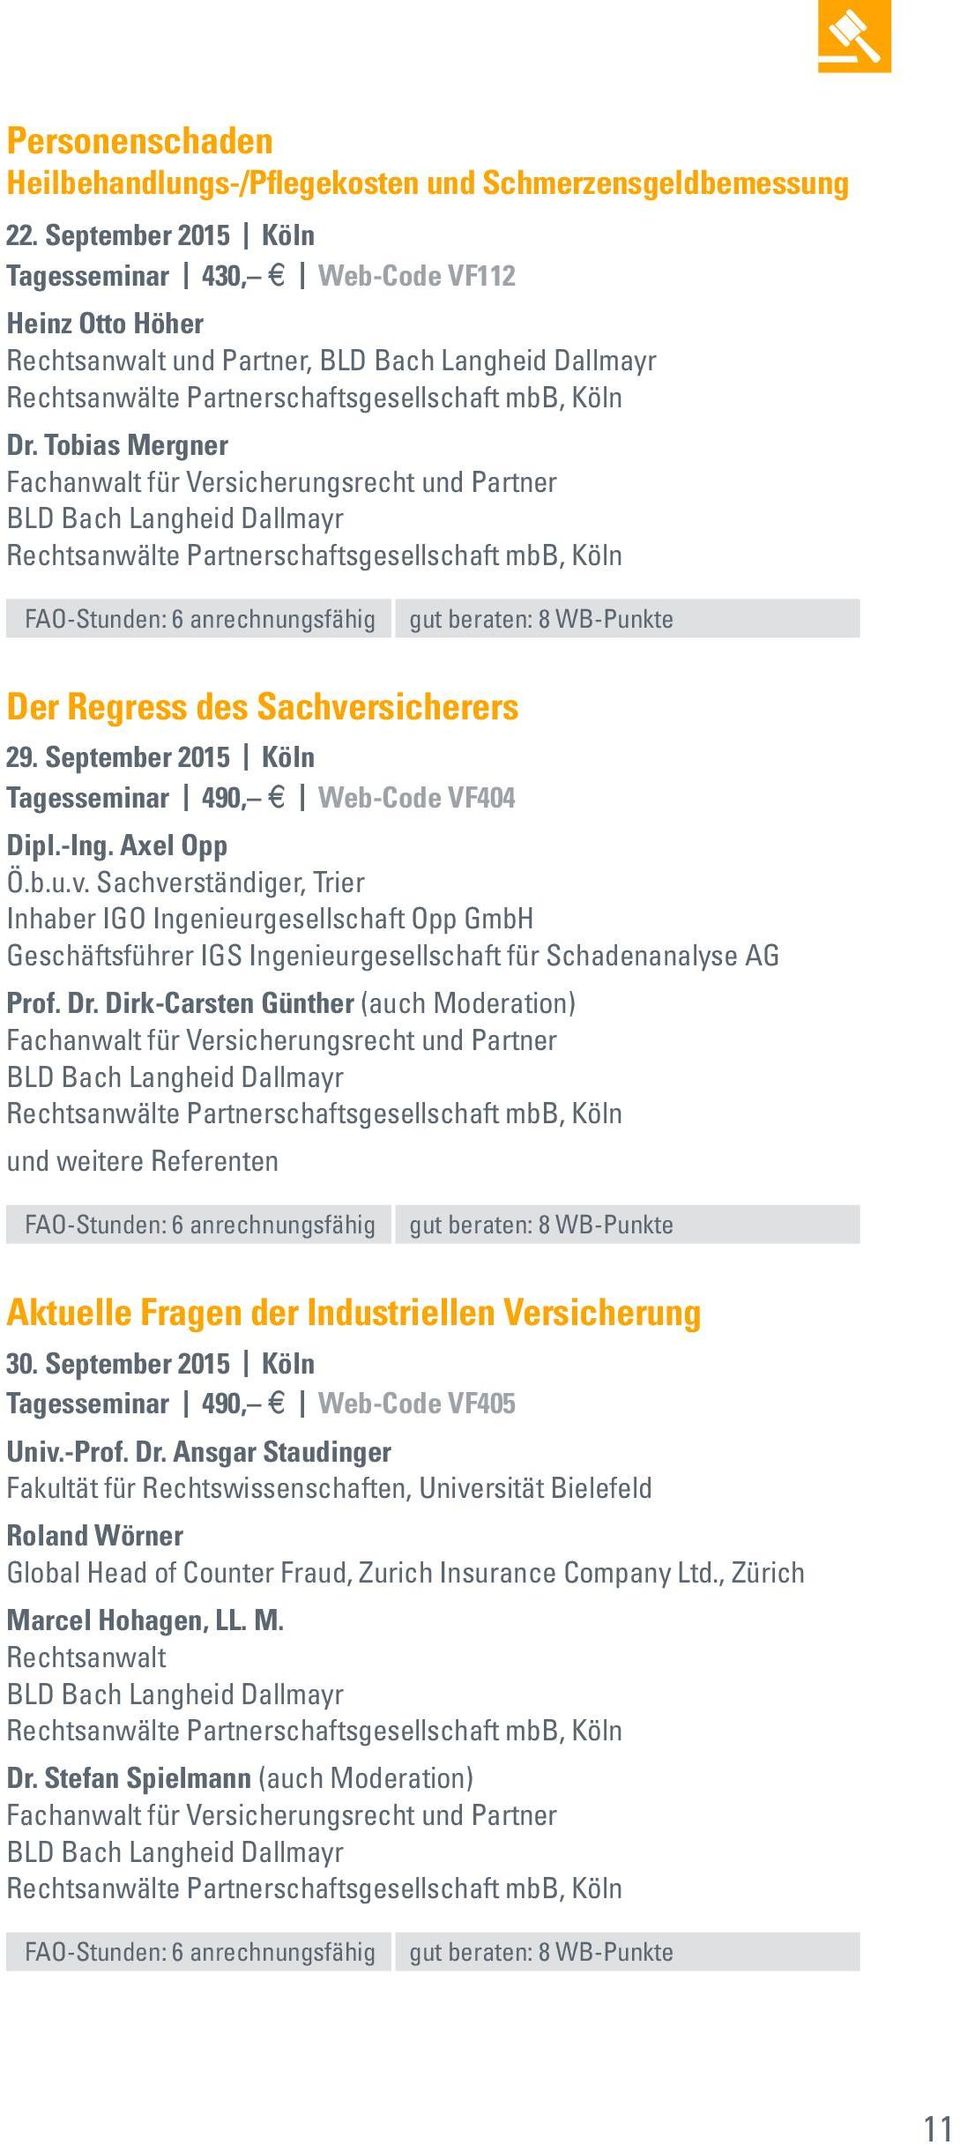 Dr. Dirk-Carsten Günther (auch Moderation) und weitere Referenten Aktuelle Fragen der Industriellen Versicherung 30. September 2015 Köln Tagesseminar 490, # Web-Code VF405 Univ.-Prof. Dr.